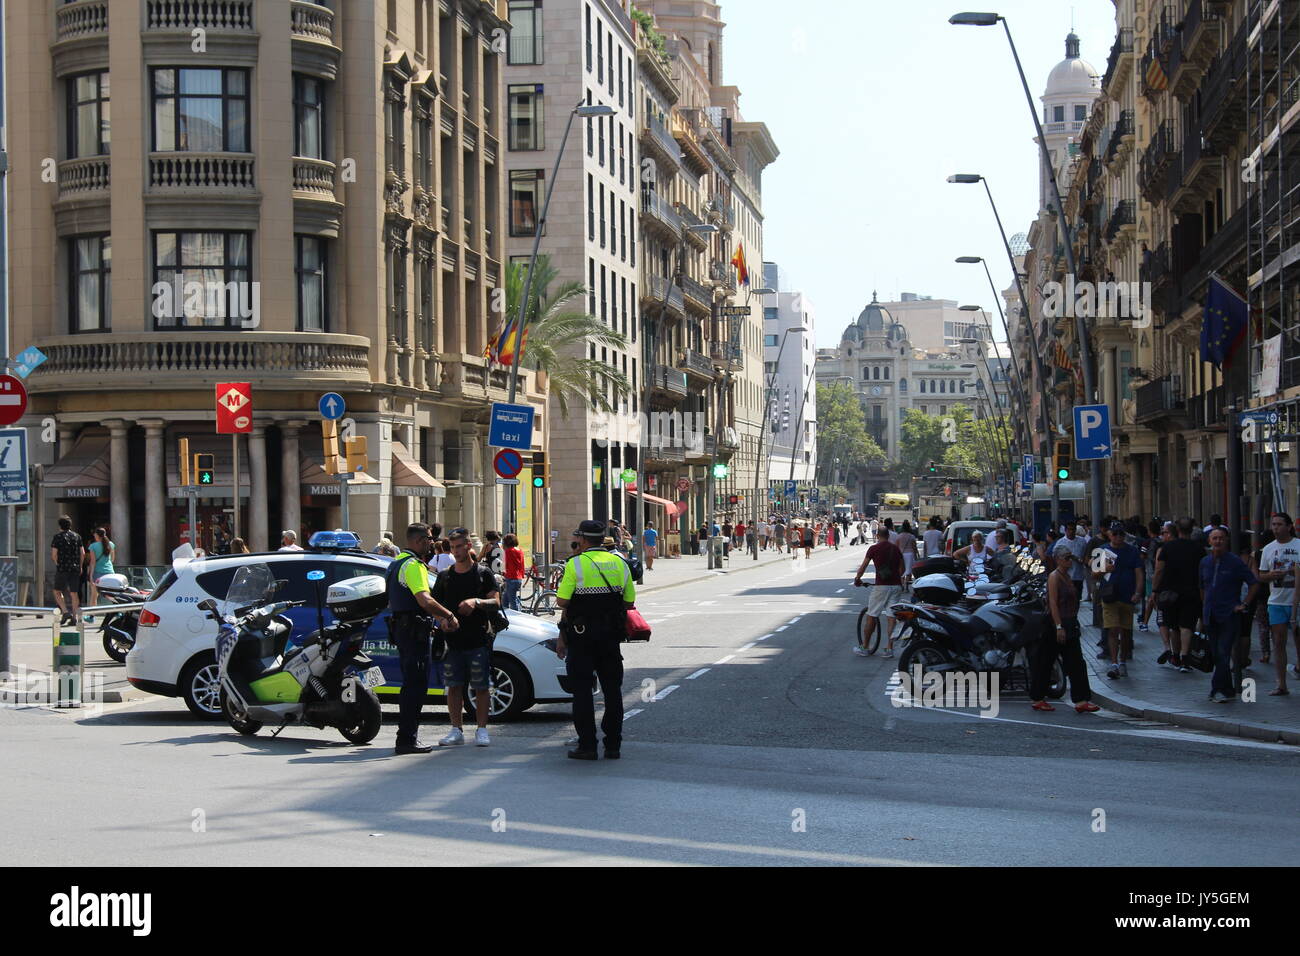 Barcelone, Espagne. 18 août, 2017. Les gens sur leur façon d'une minute de silence le jour après l'attaque terroriste à Barcelone. Dino/Geromella Crédit : Alamy Live News Banque D'Images